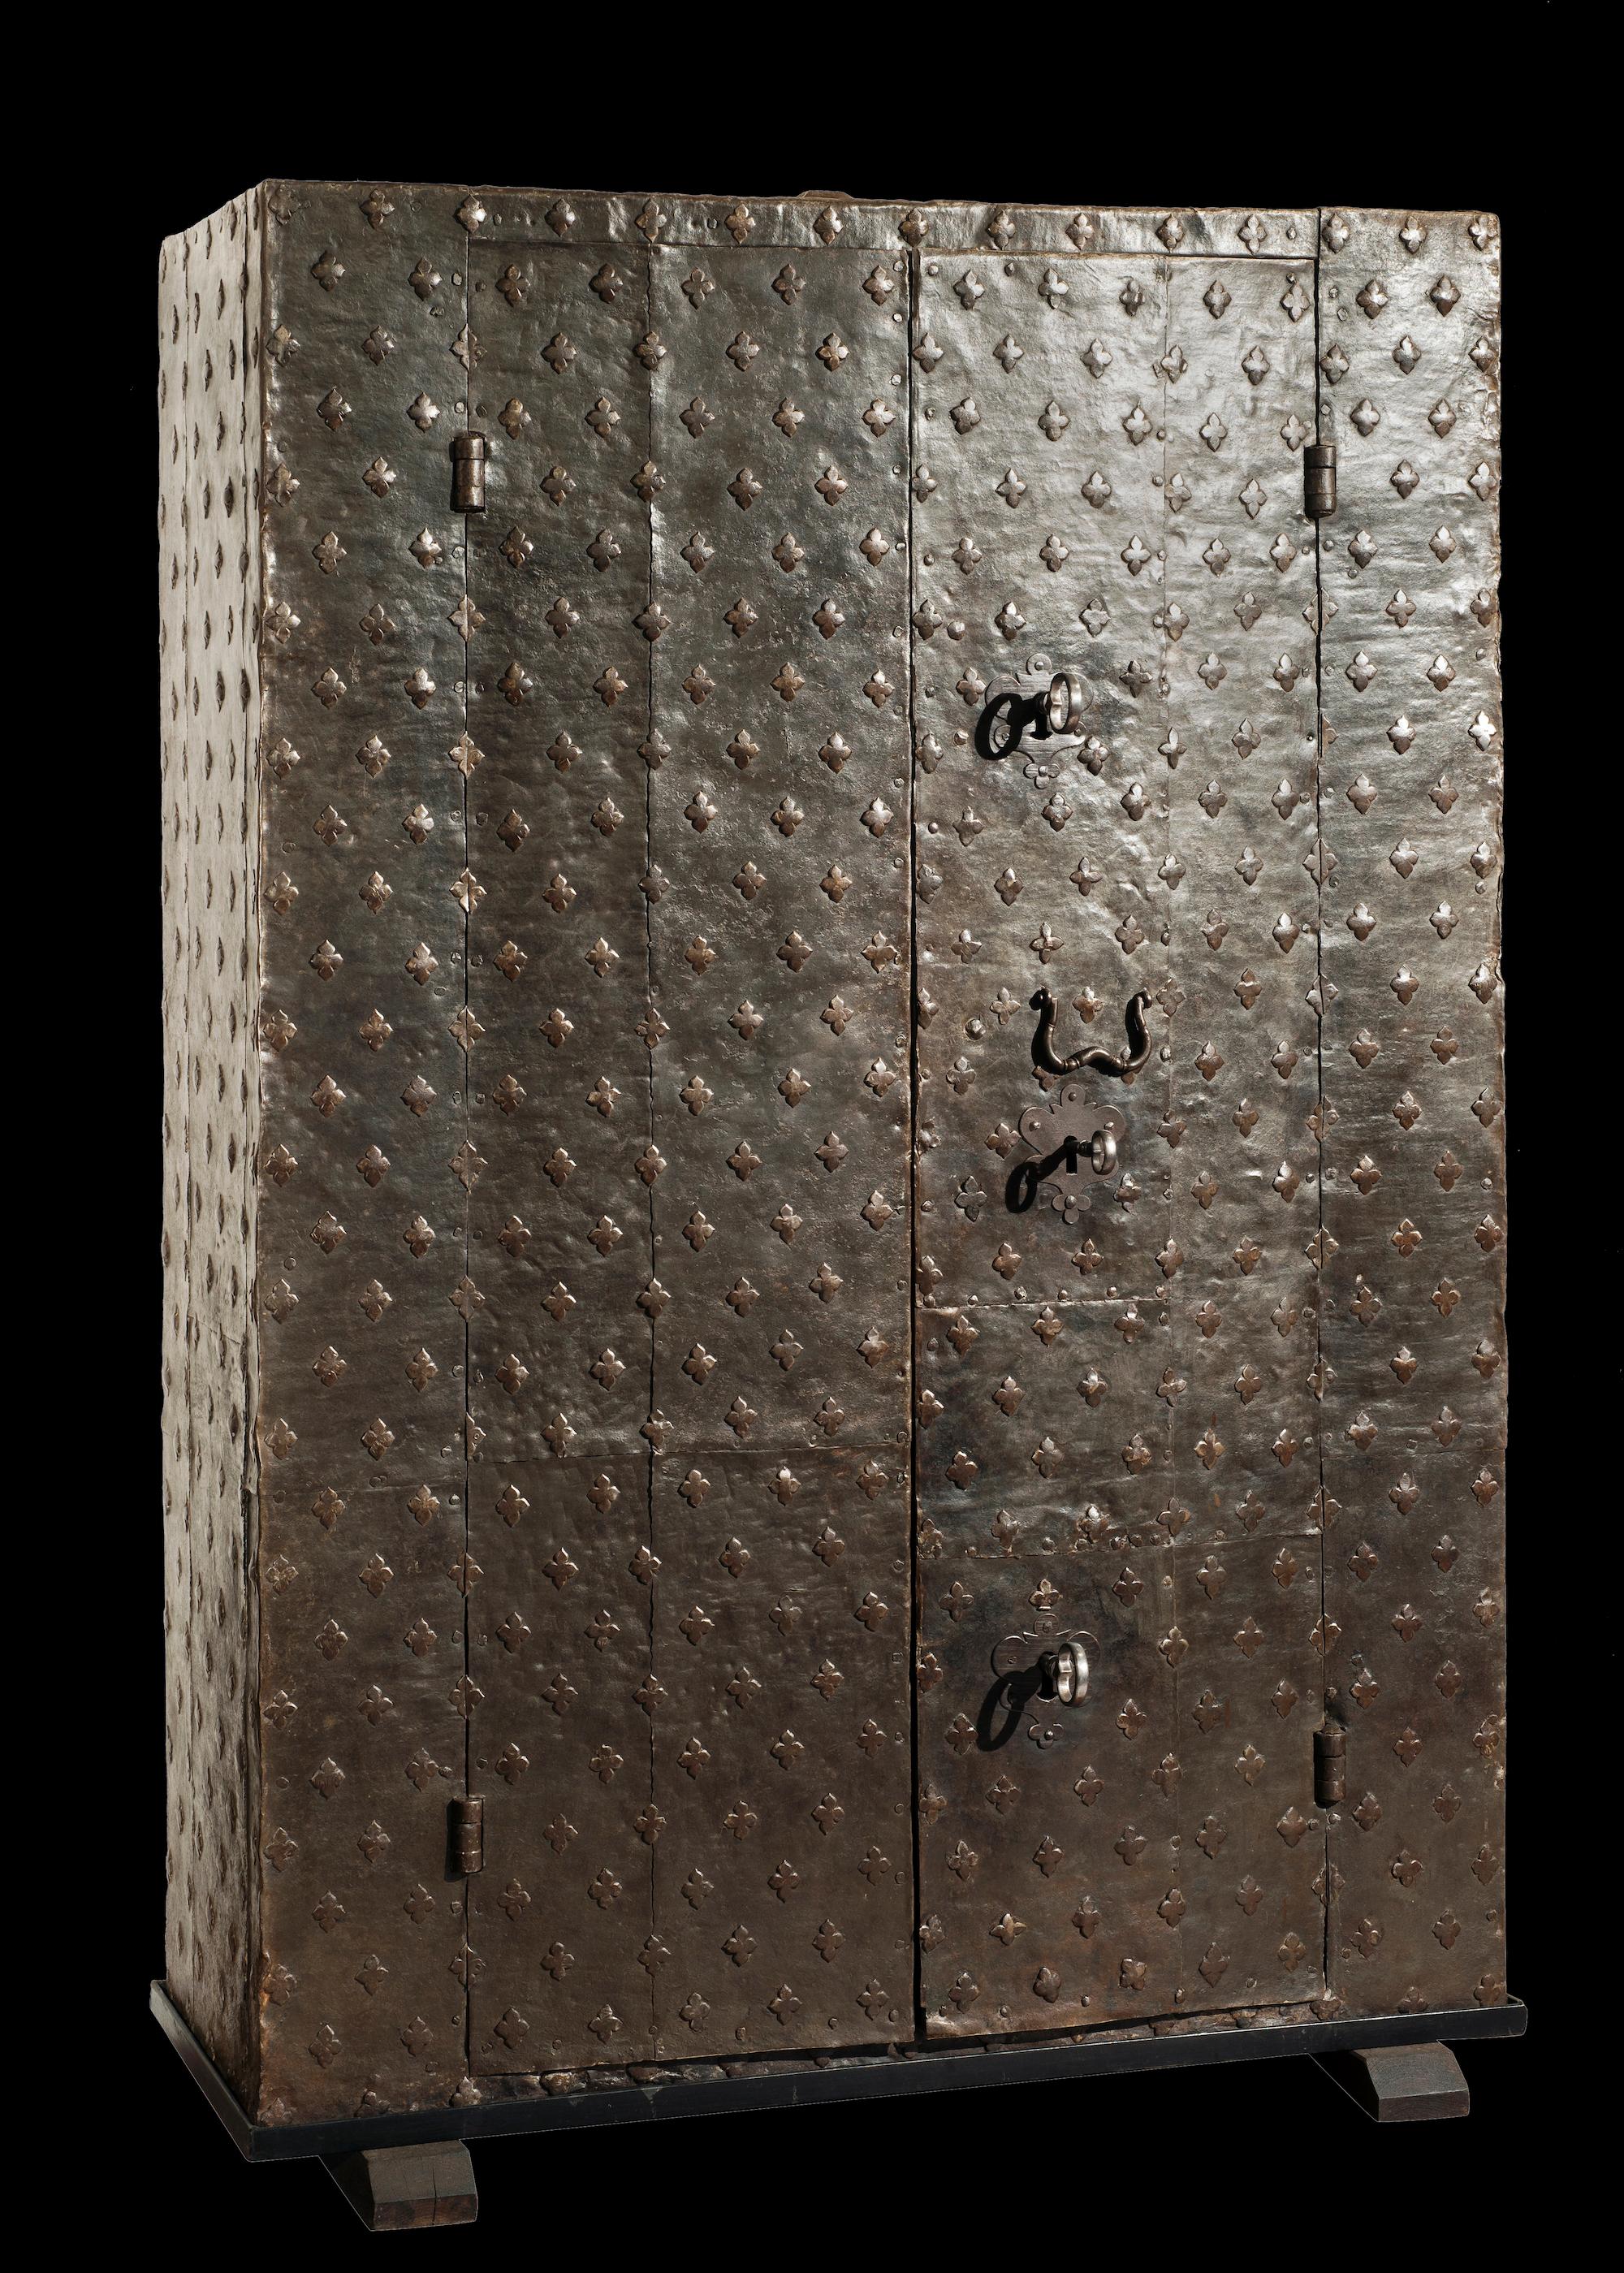 Coffre-fort à double porte

Italie du Nord, XVIIe siècle

Dimensions 190x130x46,5 cm

Structure en noyer réalisée avec des planches très épaisses (6,5/8 cm) recouvertes de plaques de fer bloquées par une série dense et architecturale de clous